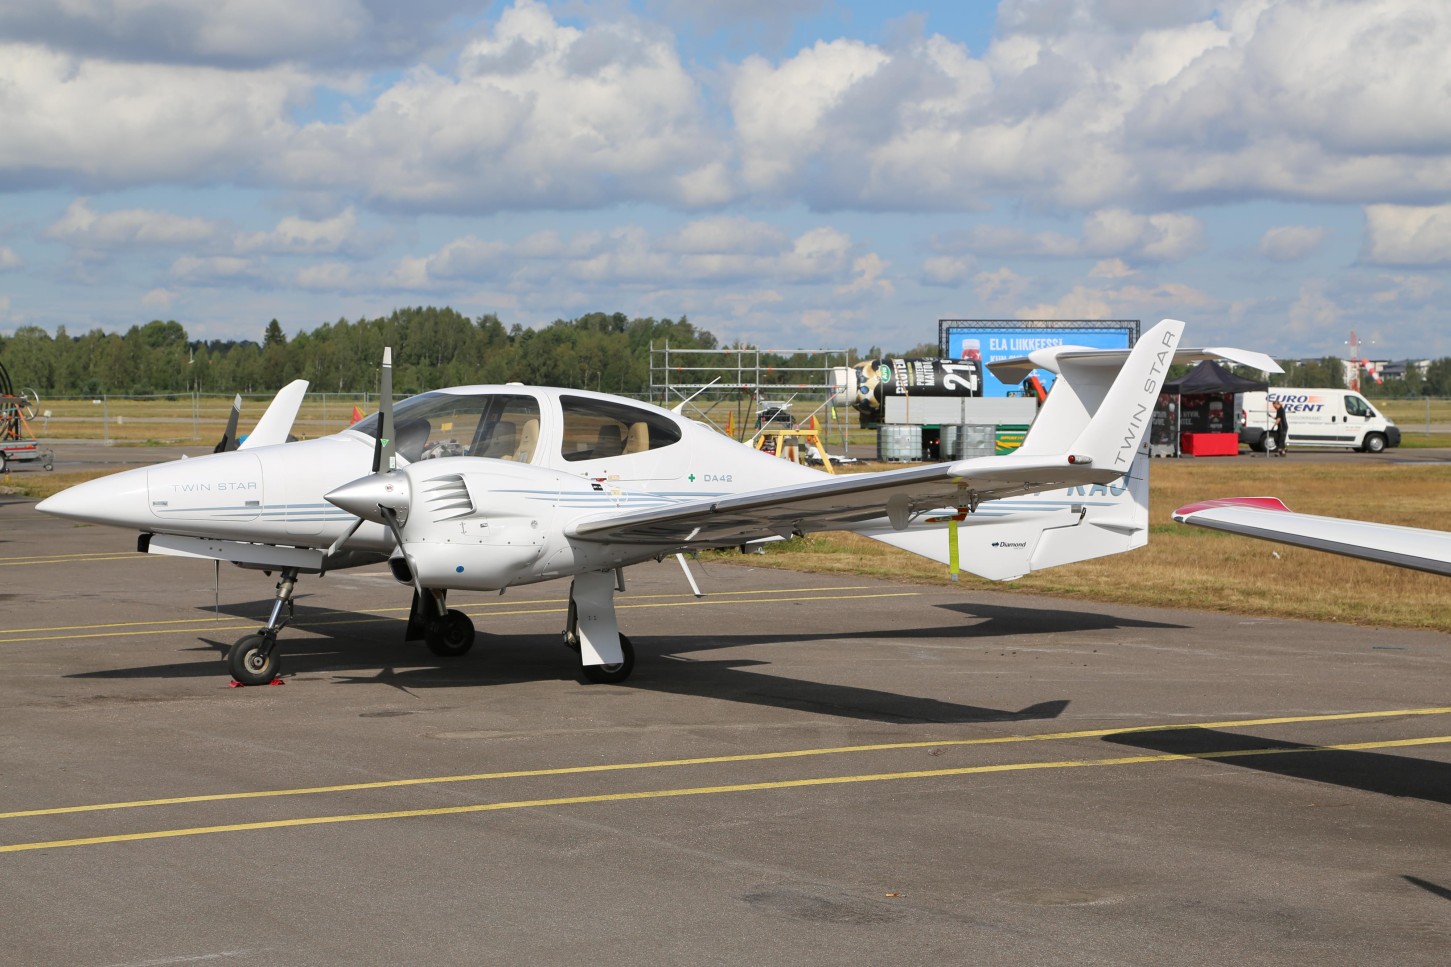 Diamond DA42 FNTP II Lentosimulaattori kuudelle | Vantaa